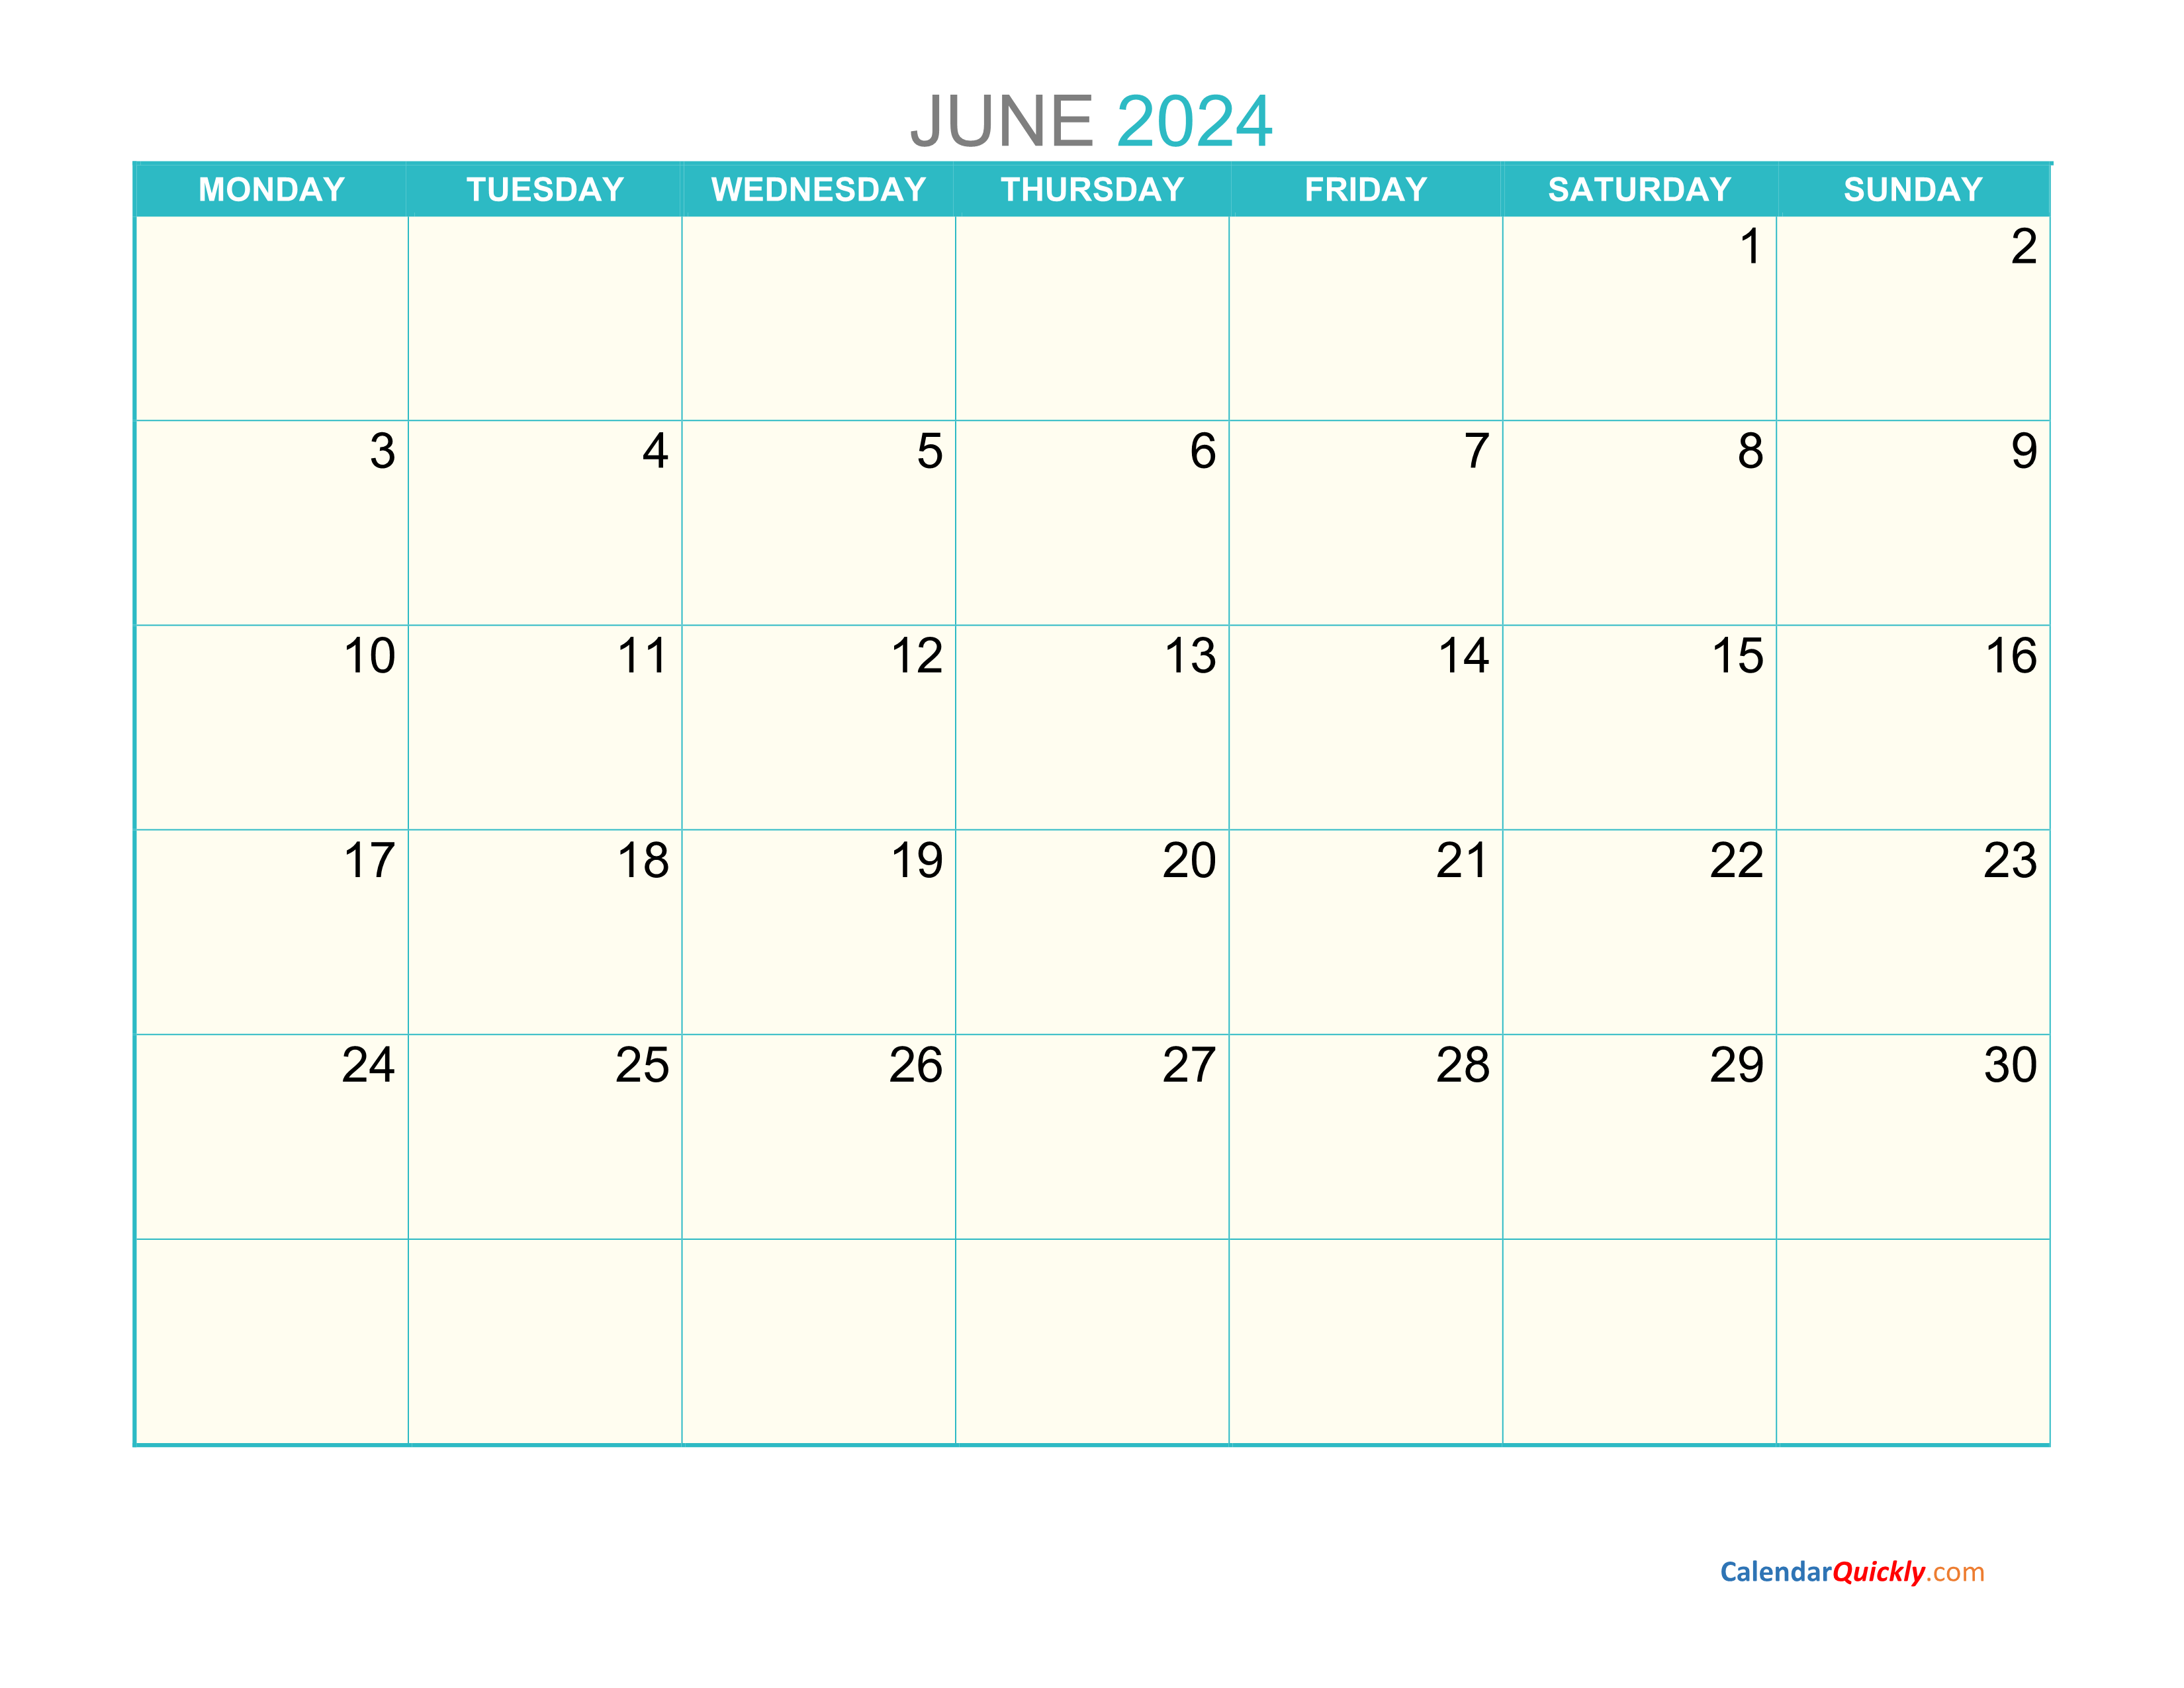 June Monday 2024 Calendar Printable | Calendar Quickly